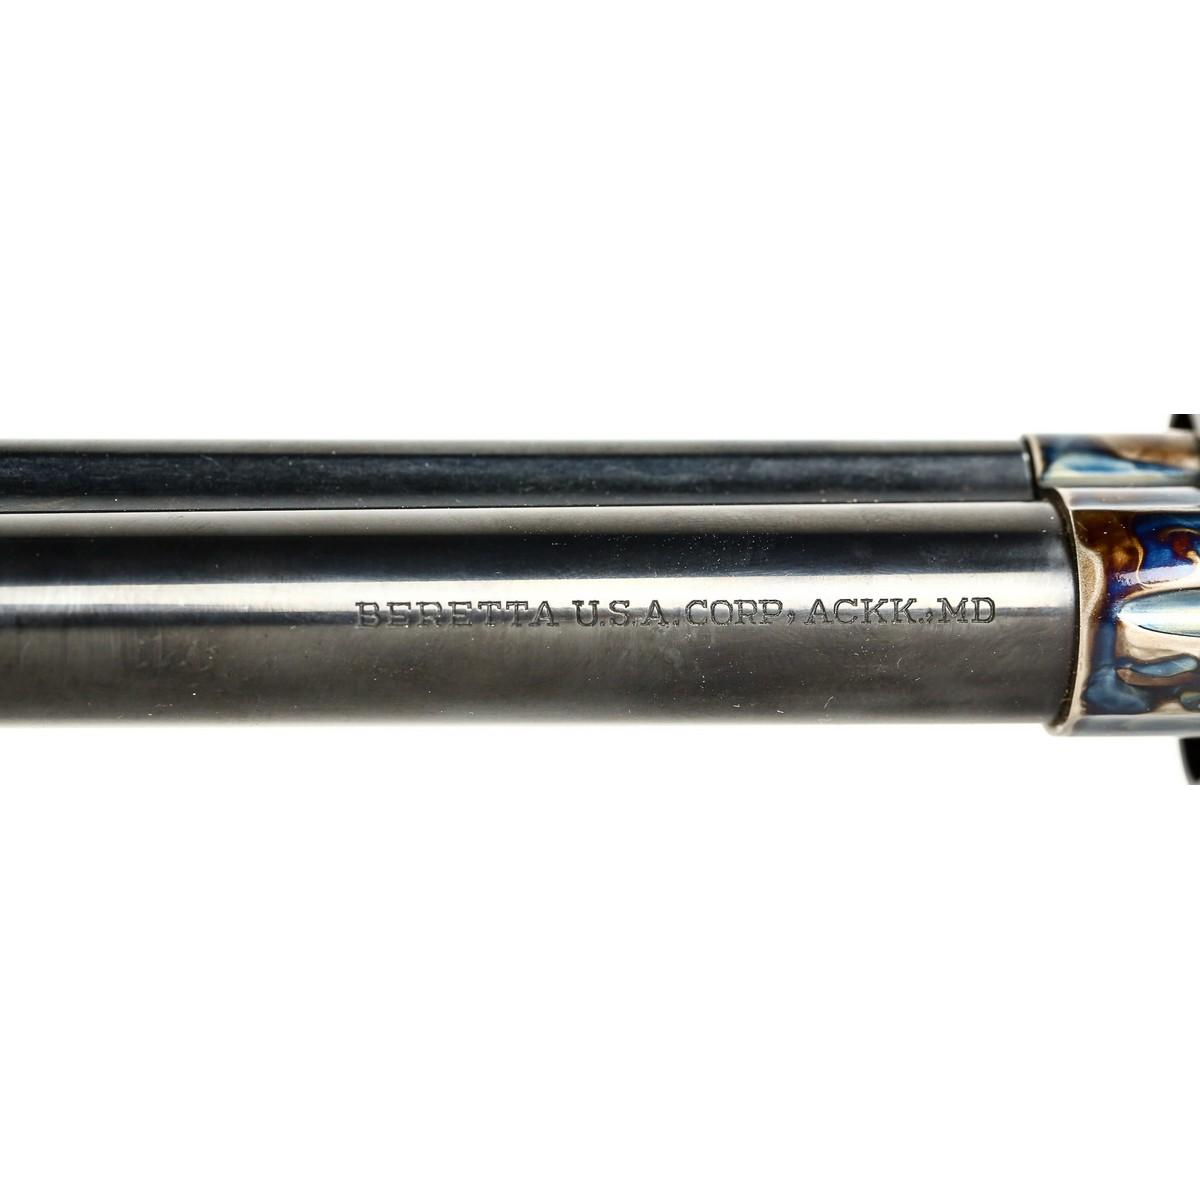 Beretta Model 0941 Stampede .45 Colt Revolver